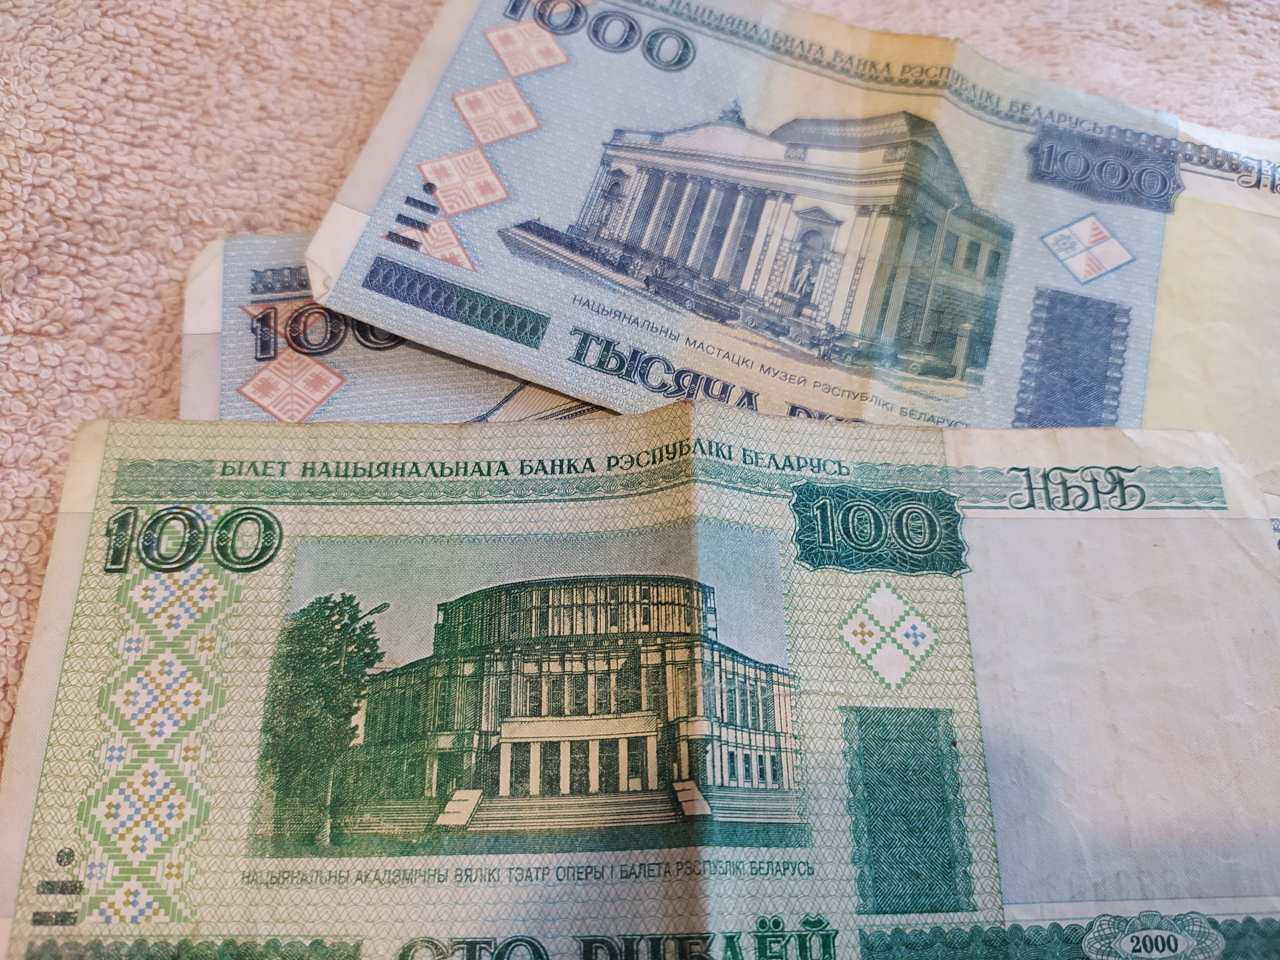 3000 долларов в белорусских. Белорусский рубль к доллару. Белорусский рубль фото. Деньги Белоруссии фото. Фото изъятых белорусских денег.